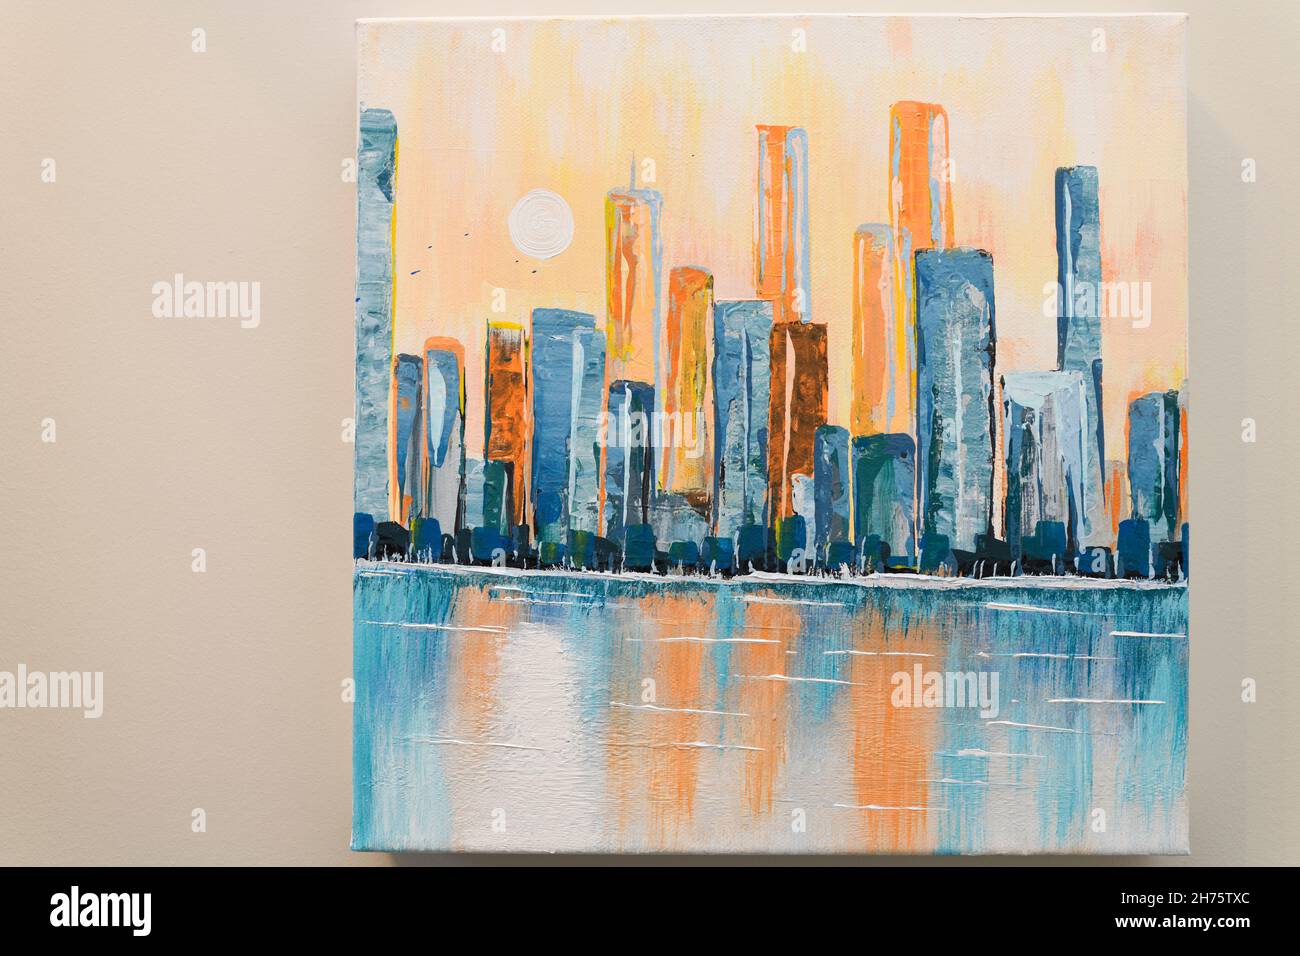 Pittura acrilica astratta su tela dello skyline cittadino con torri alte riflesse in acqua con sole Foto Stock